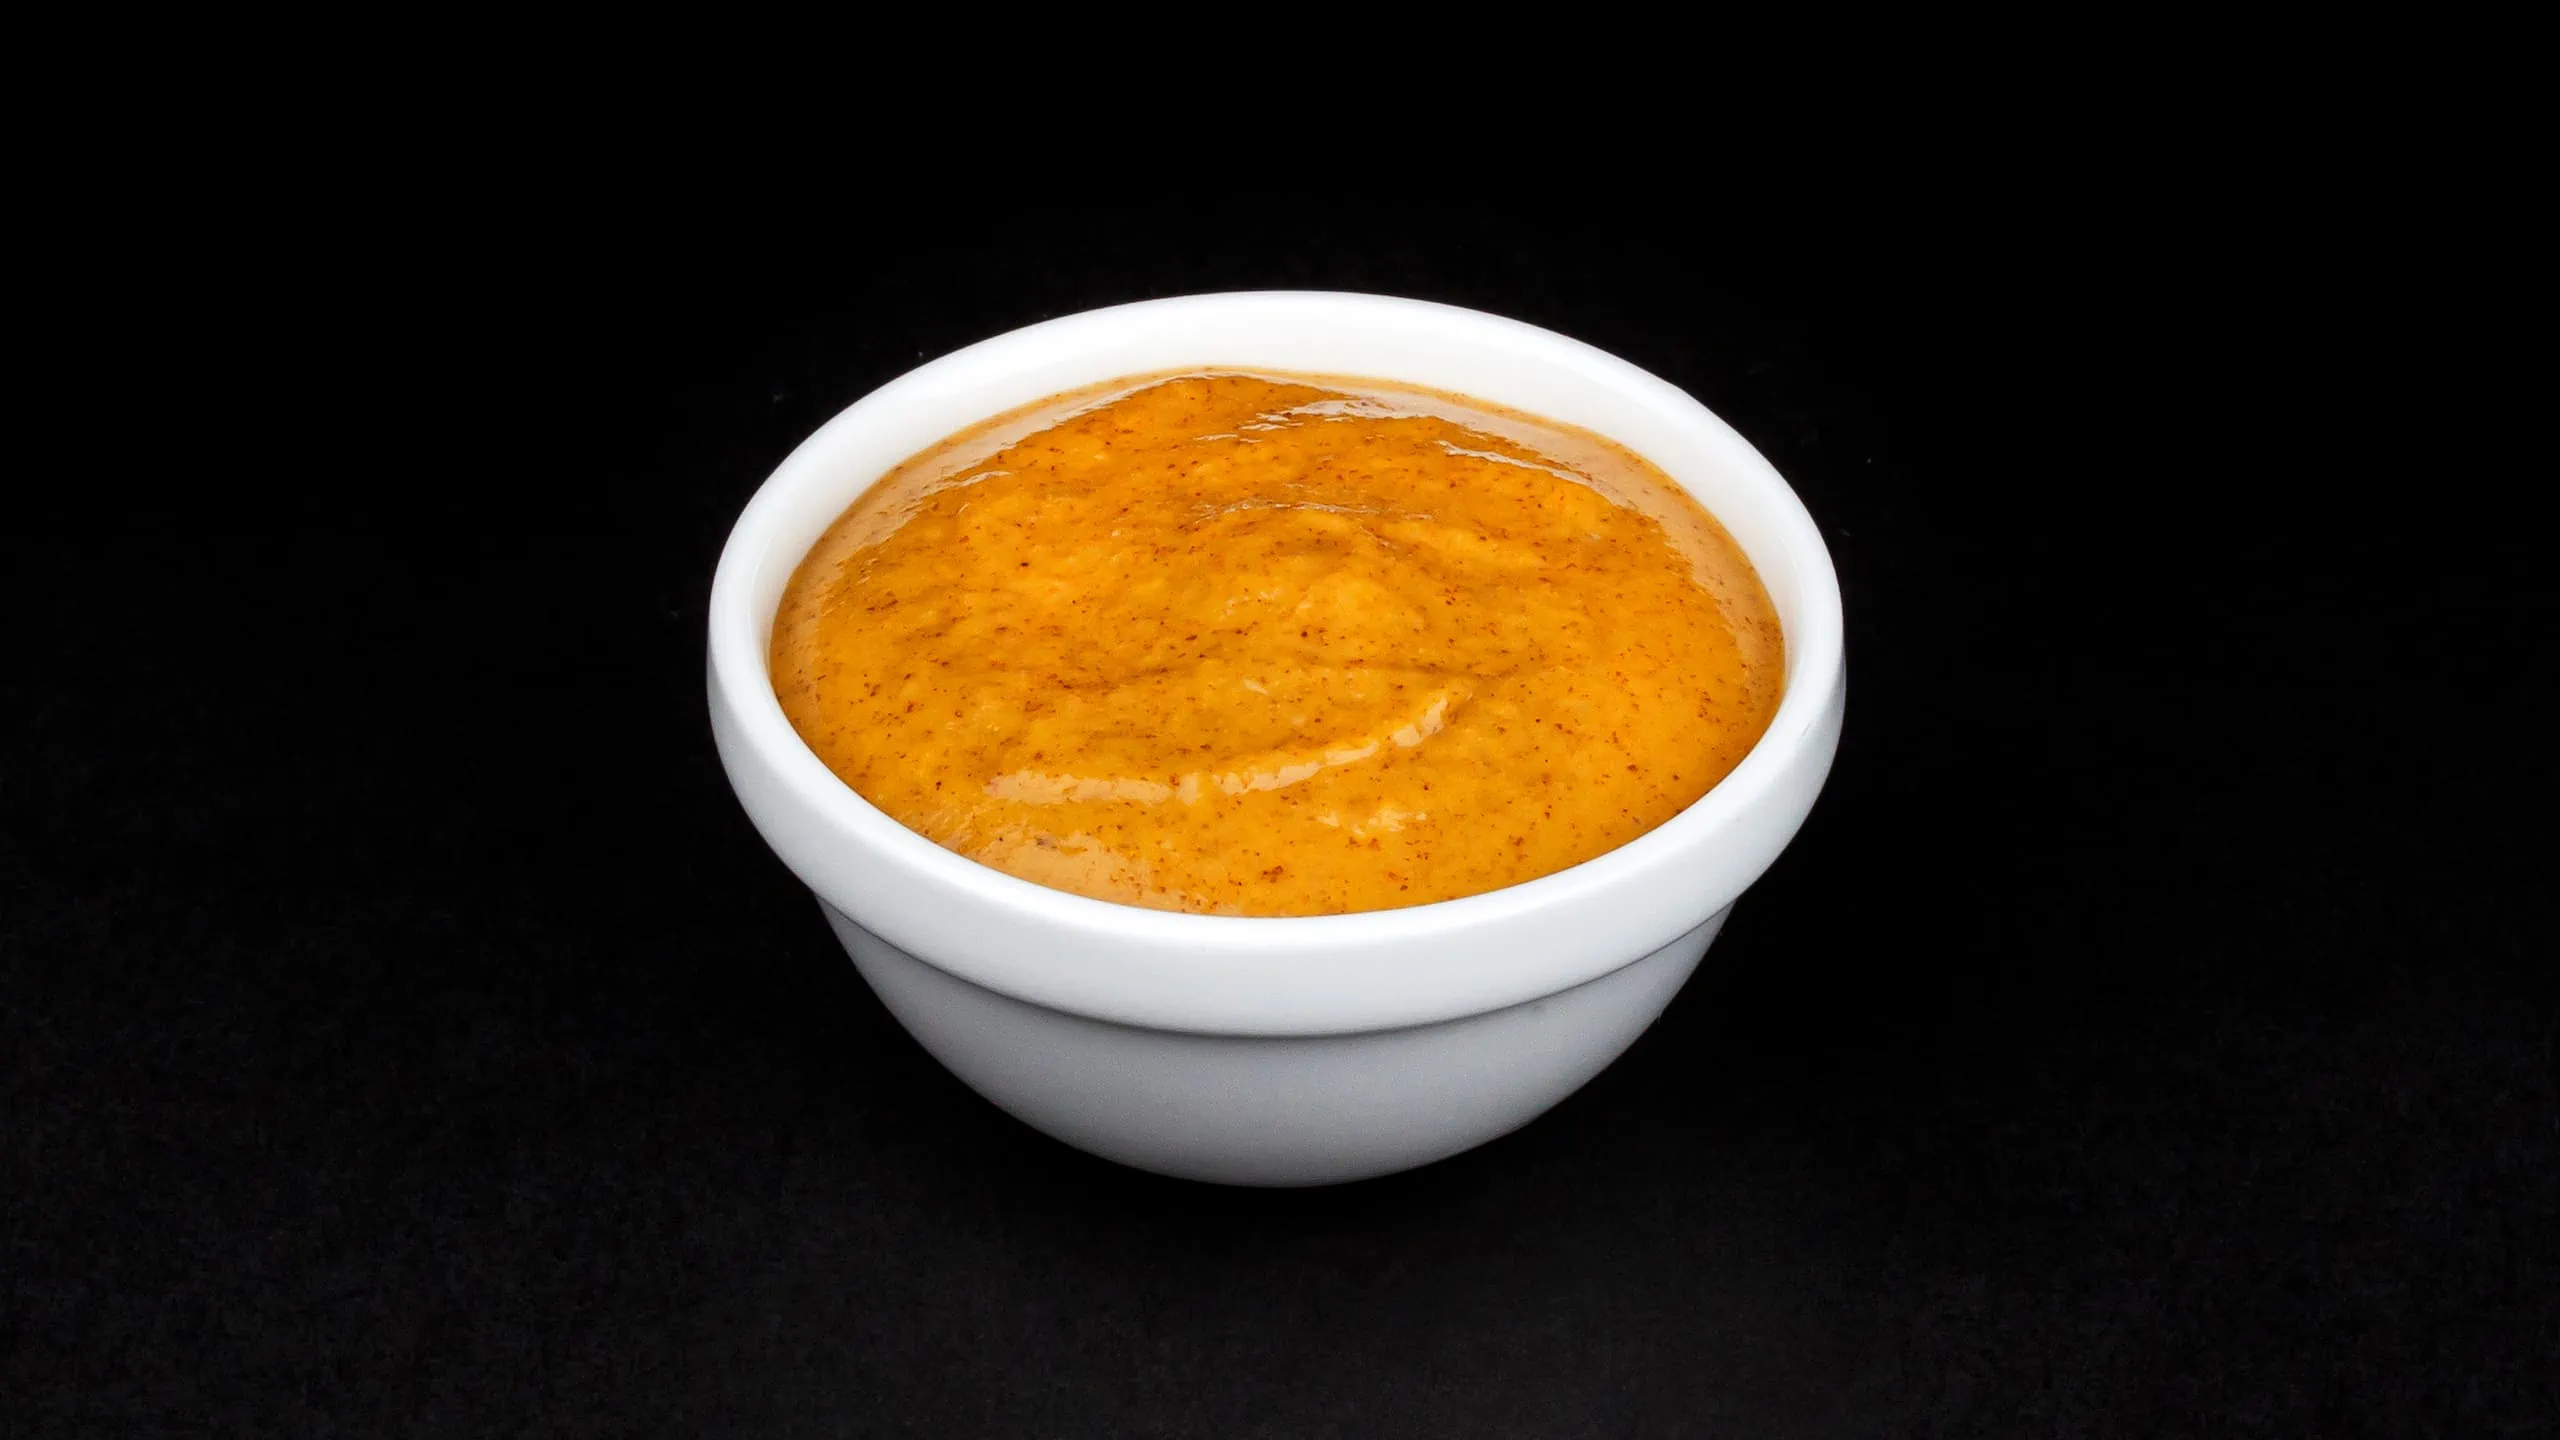 Our version of La Vics' orange sauce recipe